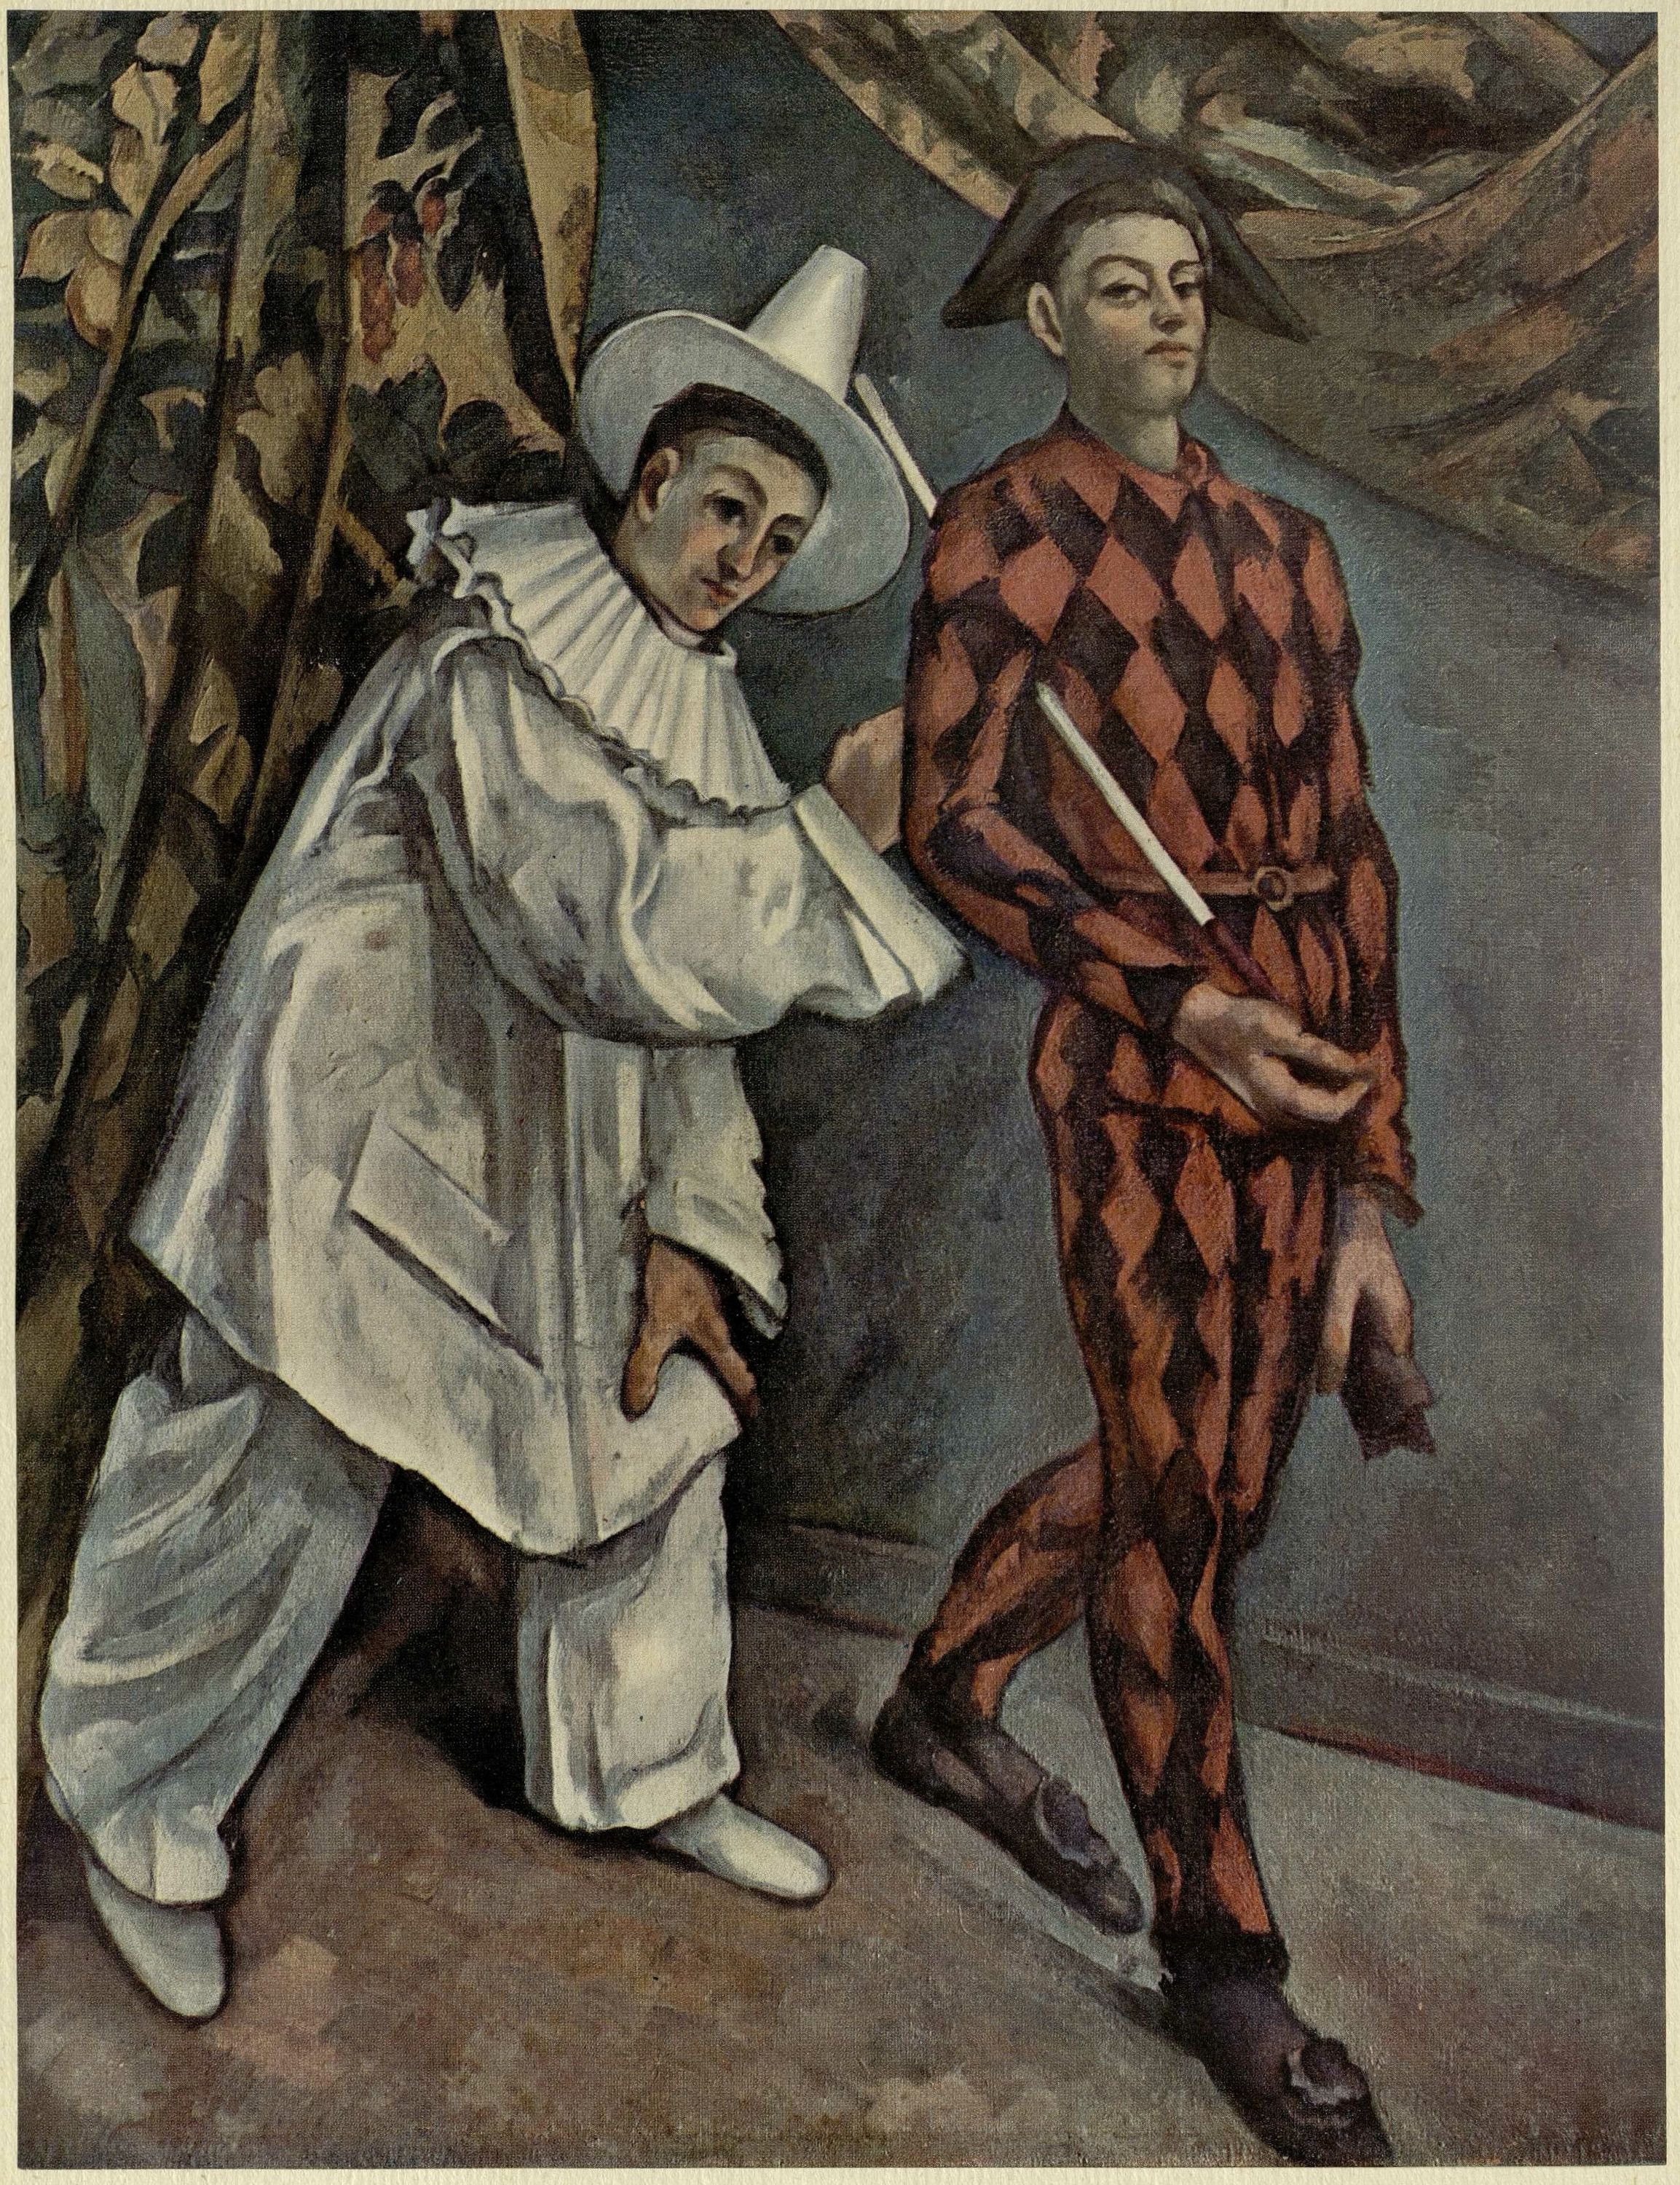 Поль Сезанн. Пьеро и арлекин. 1888